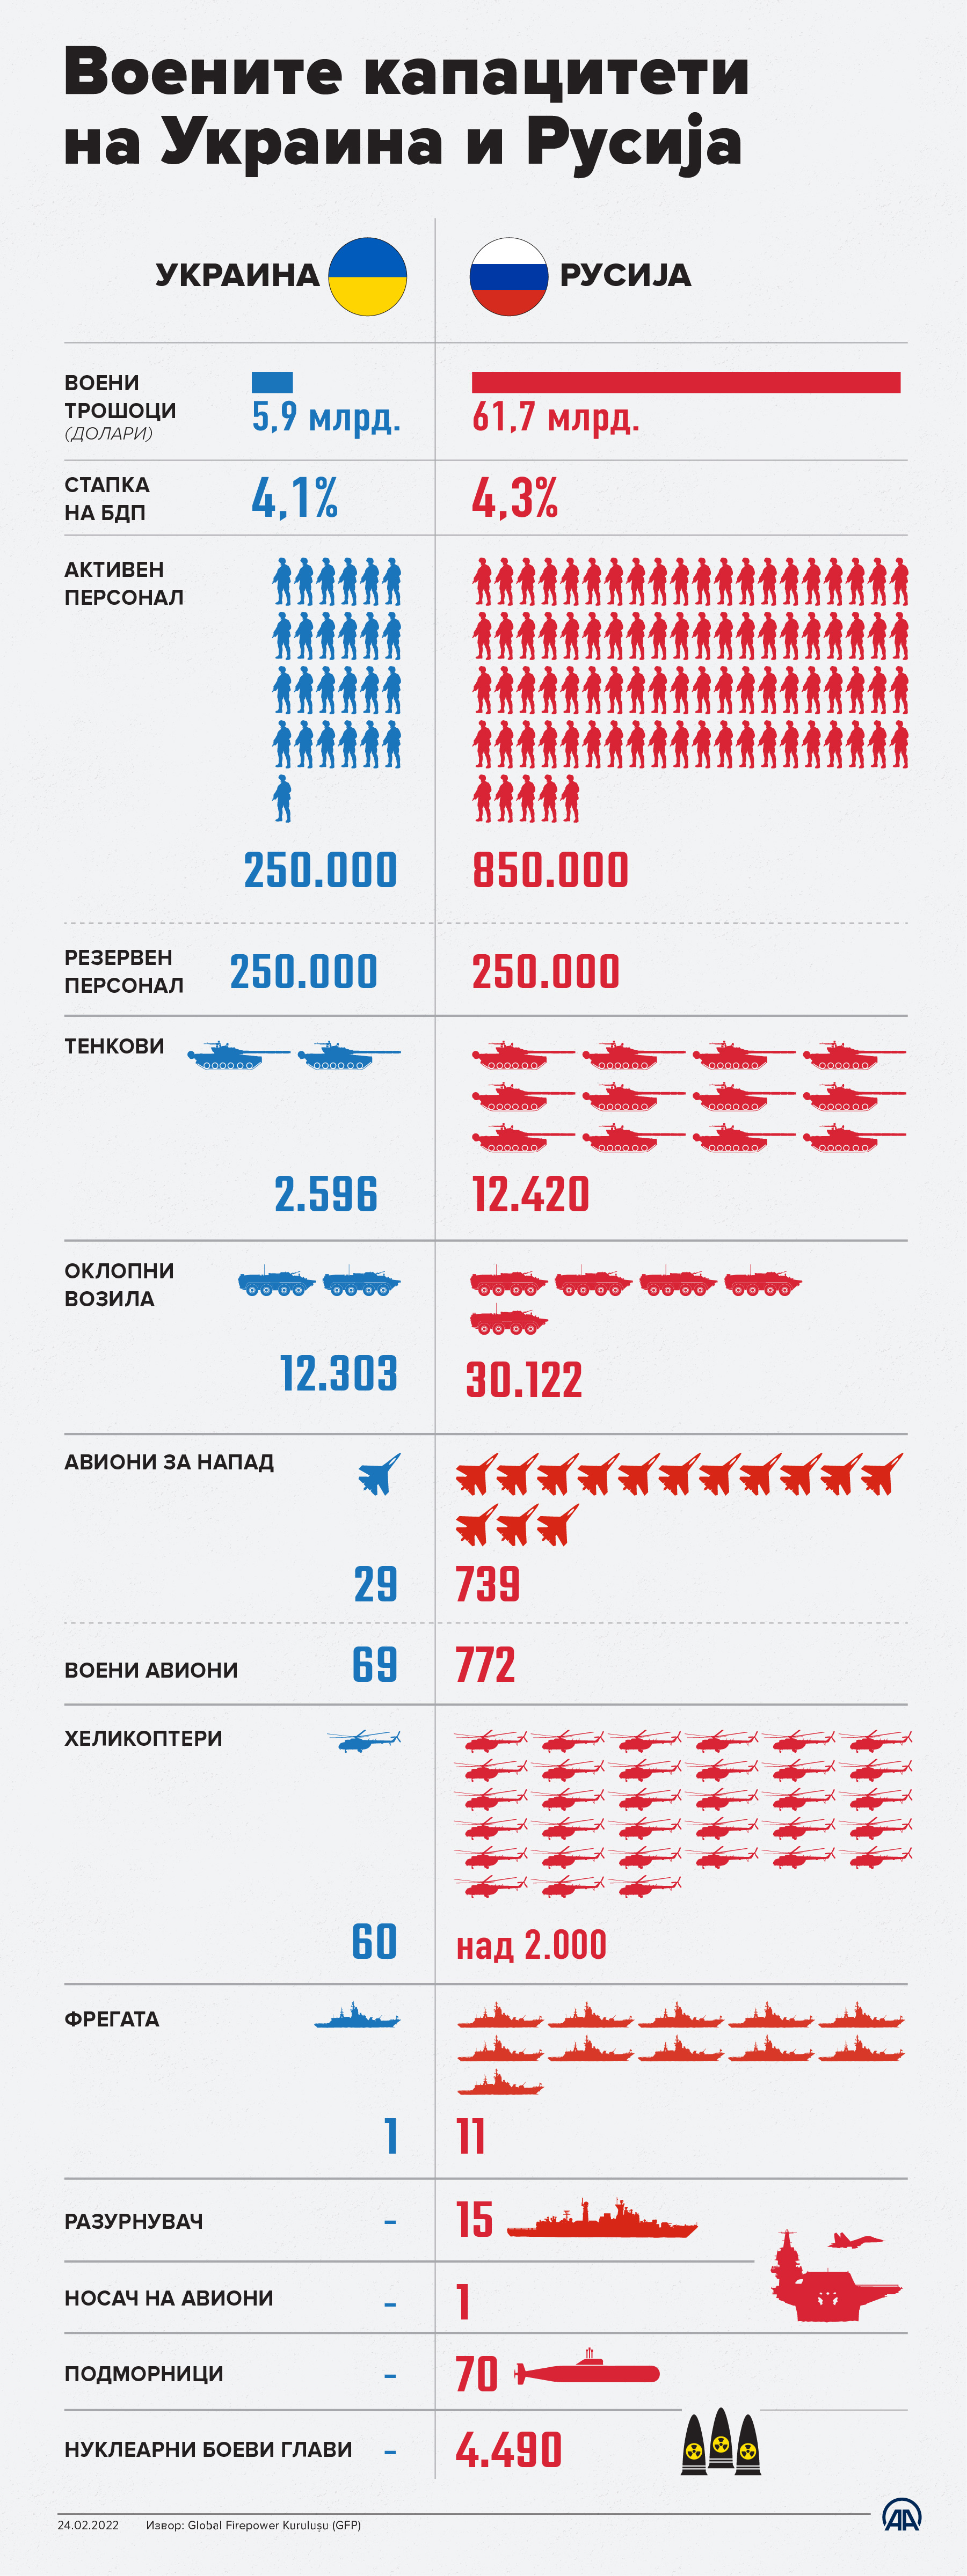 Воените капацитети на Украина и Русија